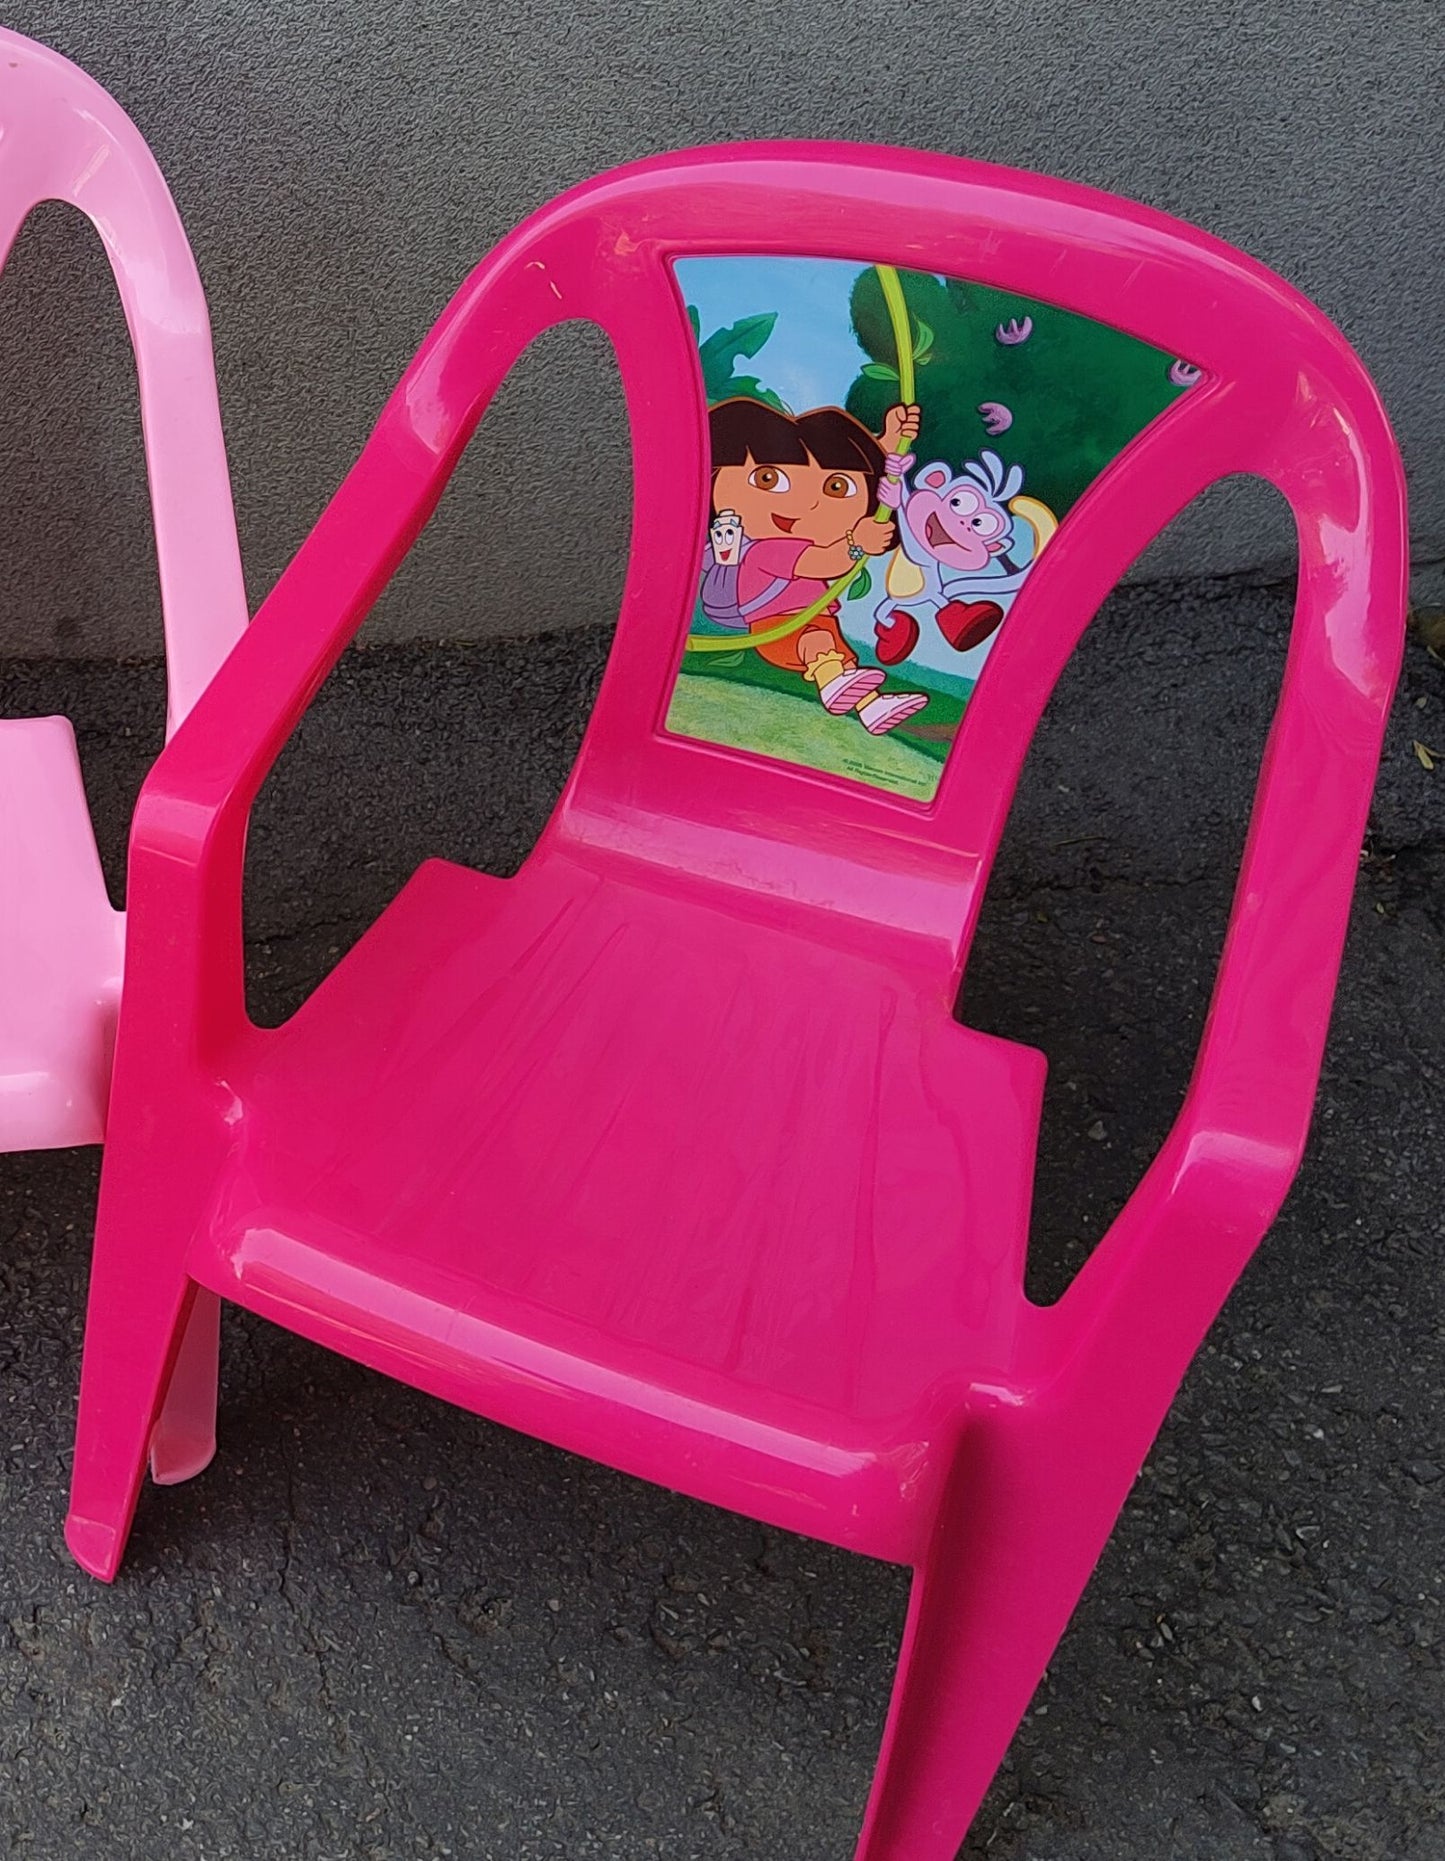 Chaise en plastique pour enfants